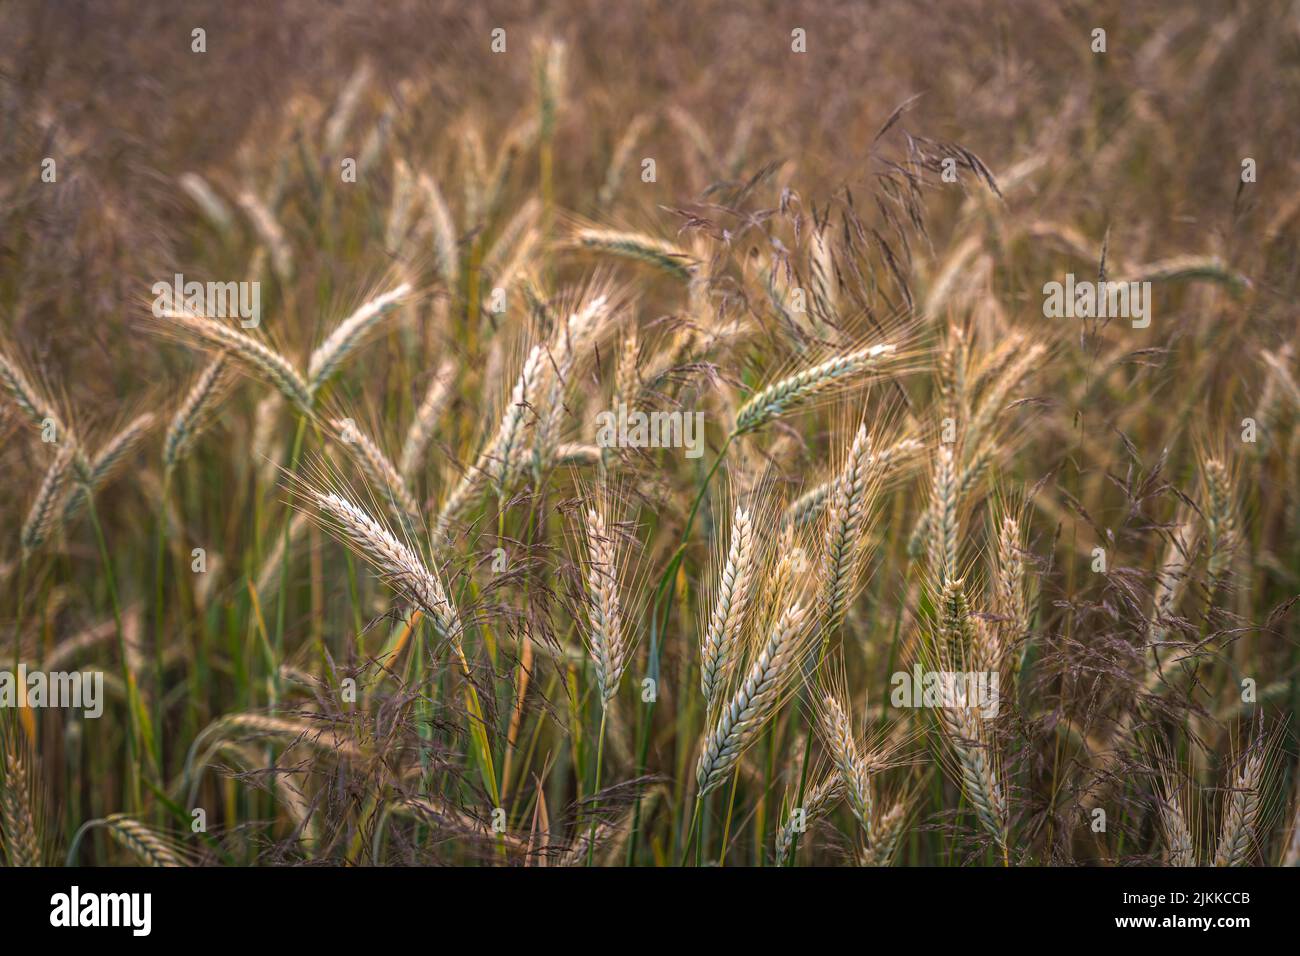 Goldene Ähren von Weizen auf dem Feld im Sonnenlicht. Weizenfelder am Ende des Sommers voll reif. Stockfoto